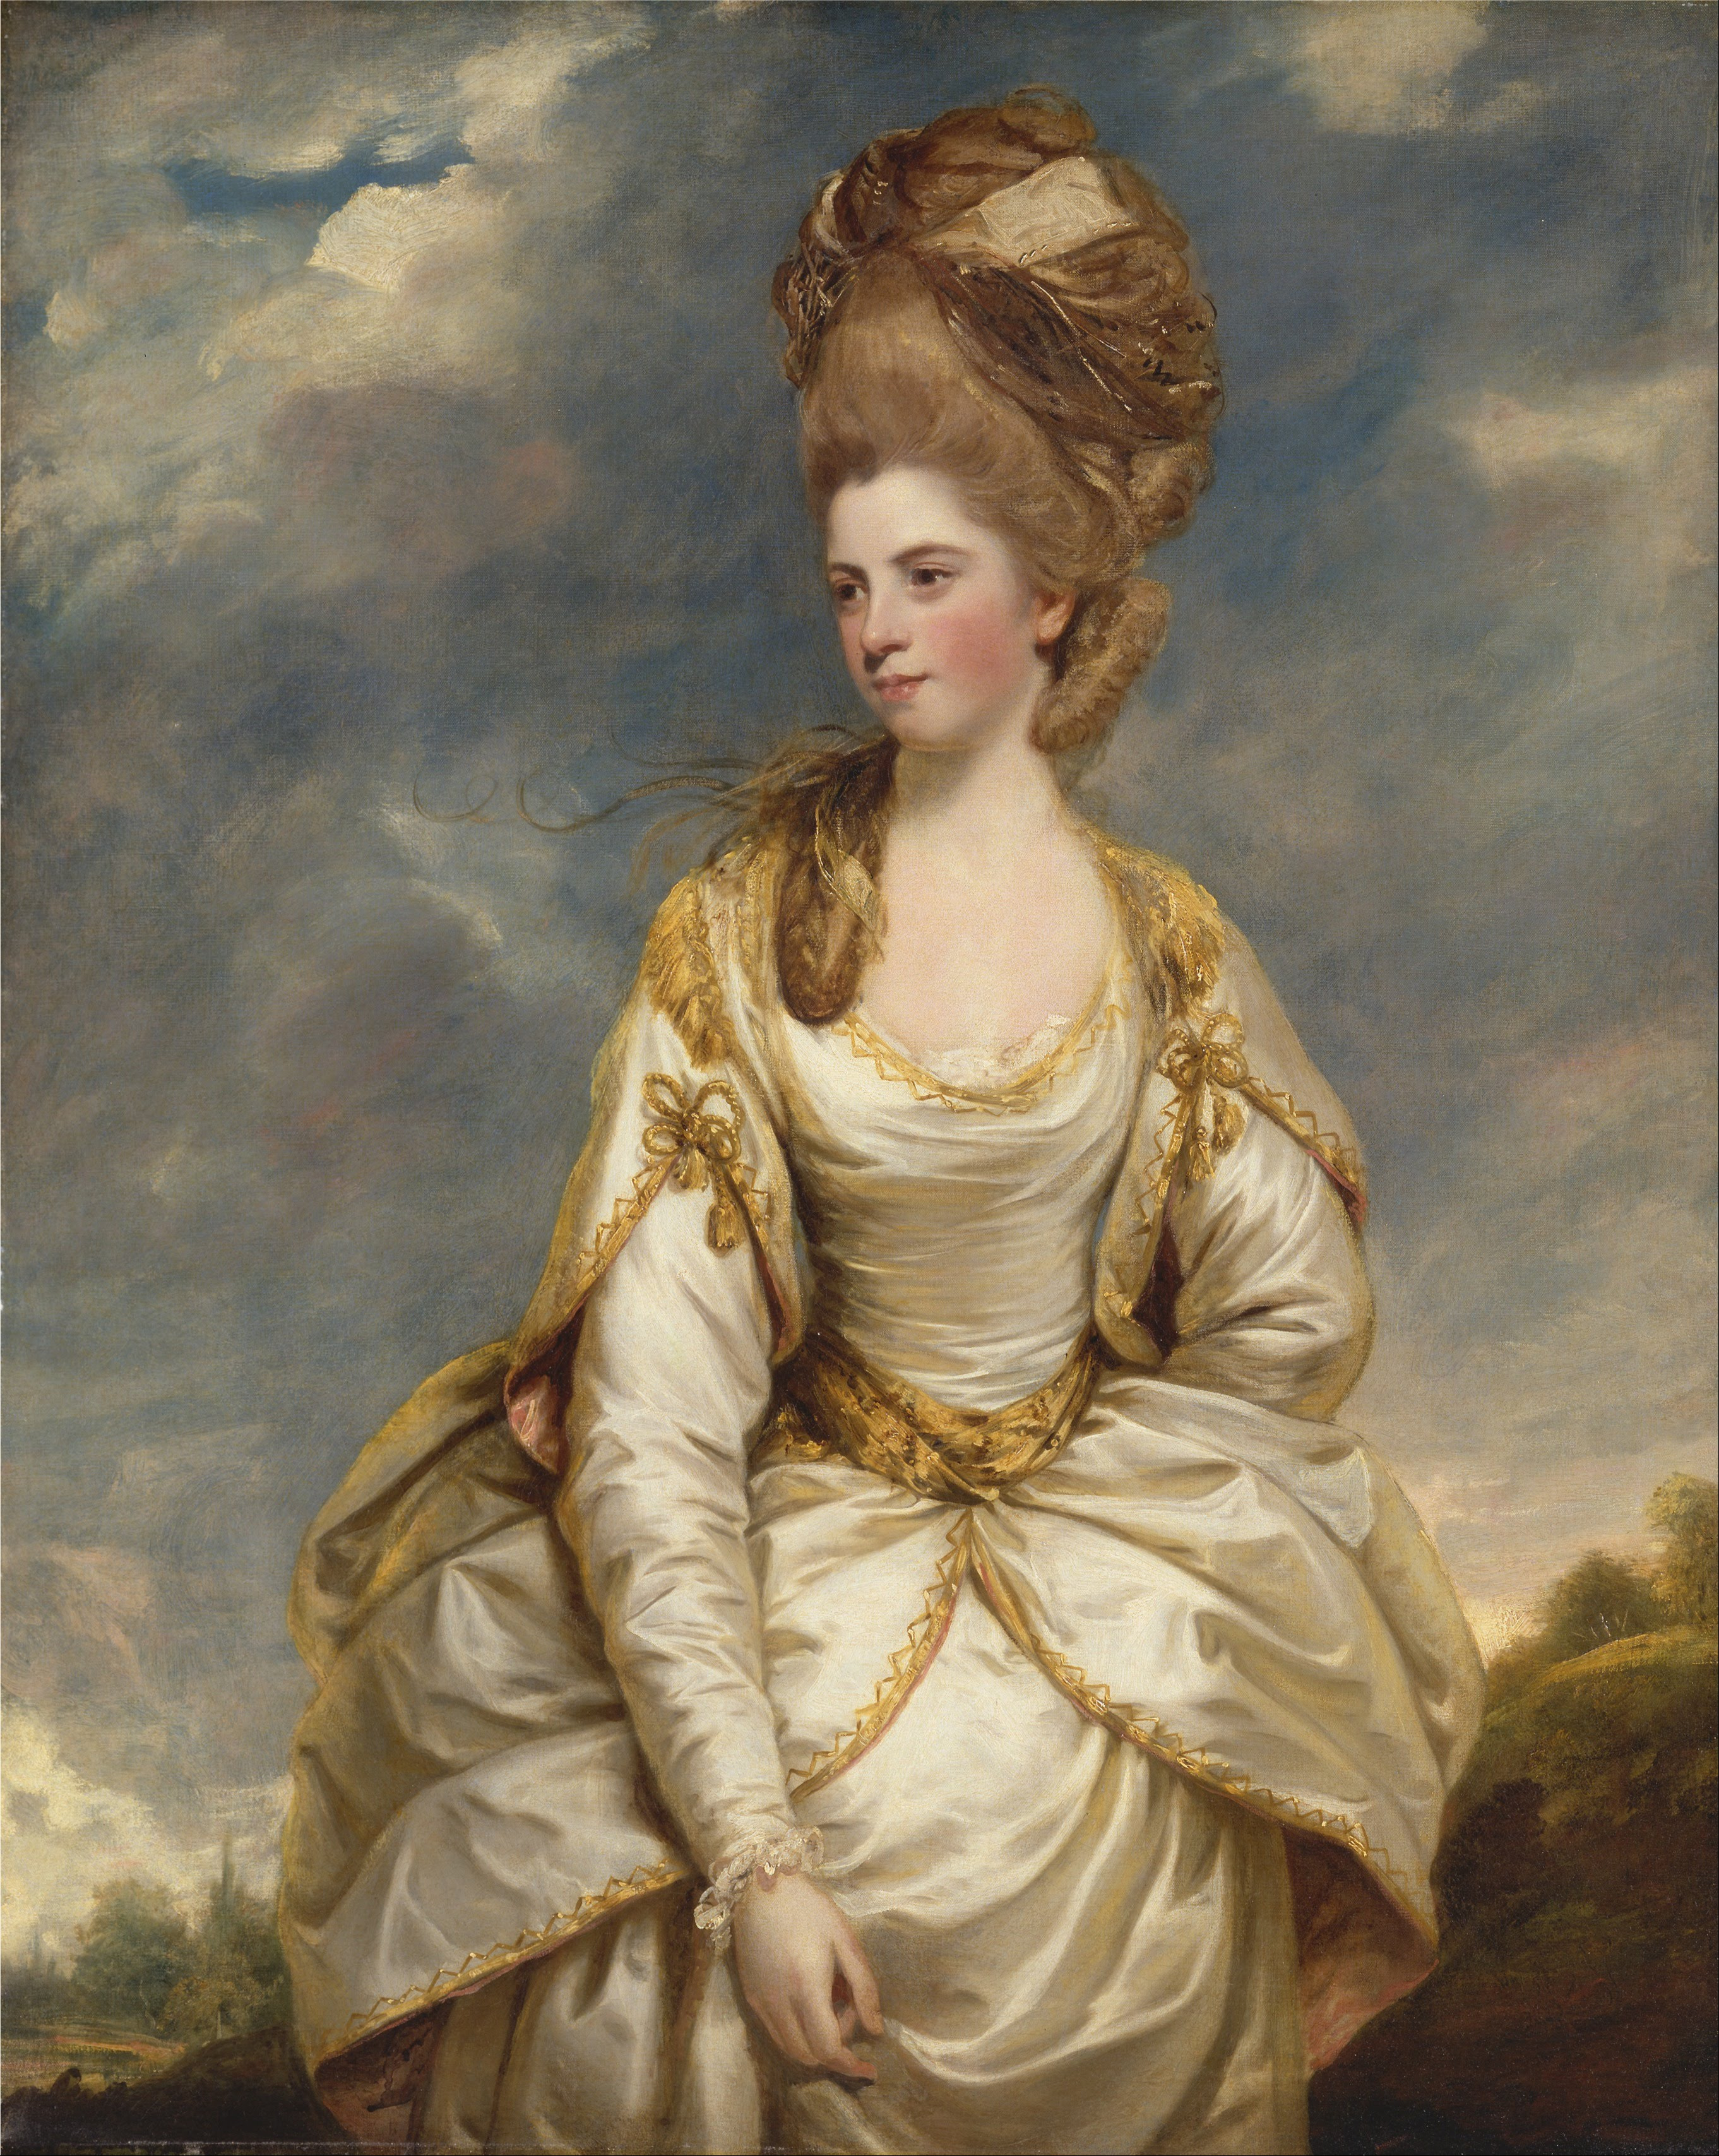 莎拉•坎贝尔 by 约书亚 · 雷诺兹 - 1777-1778 - 127.6 x 101.6 cm 耶鲁大学英国艺术中心